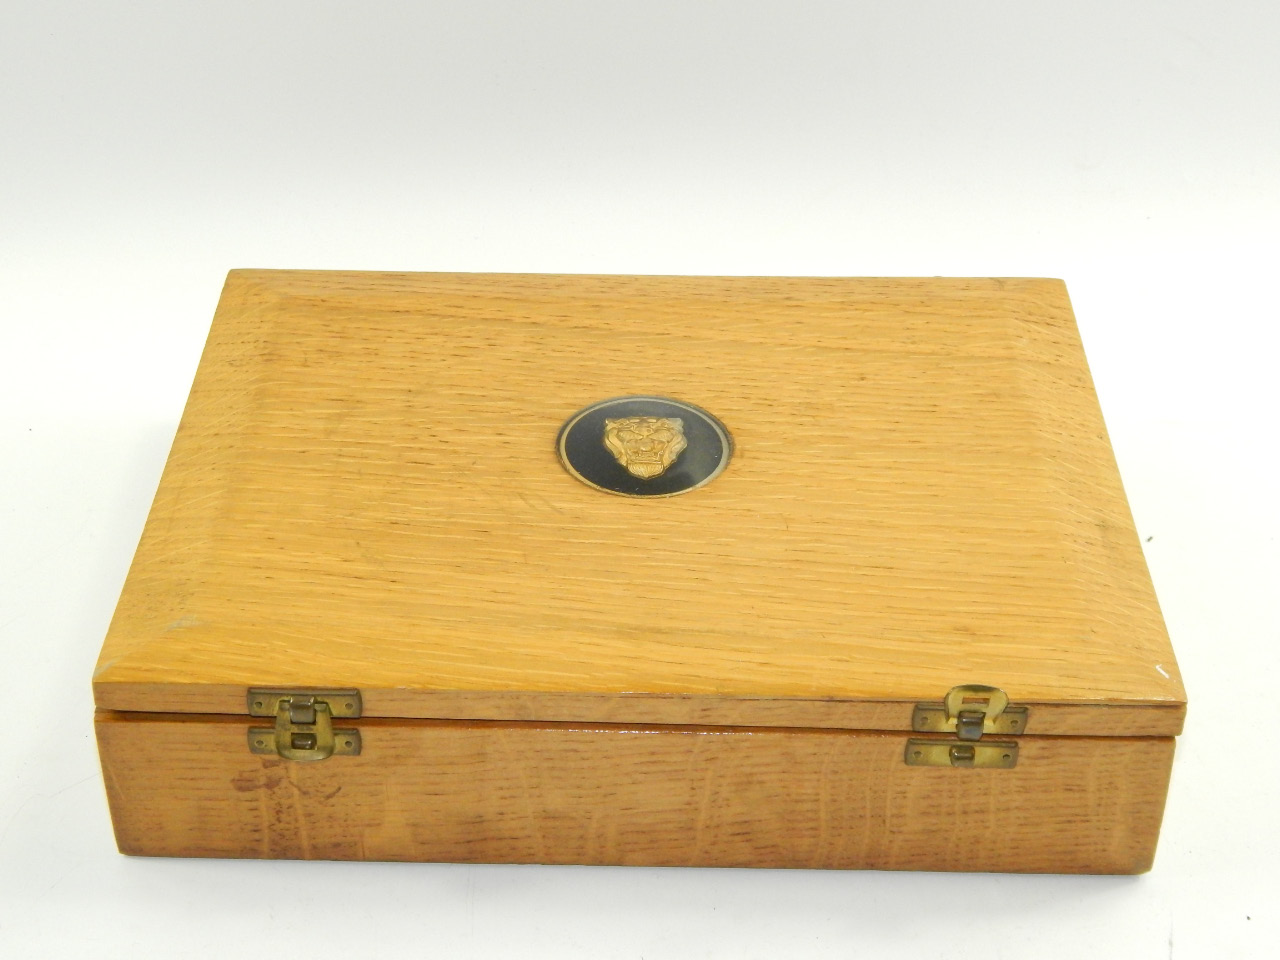 A Jaguar Cars oak box, containing place mats.